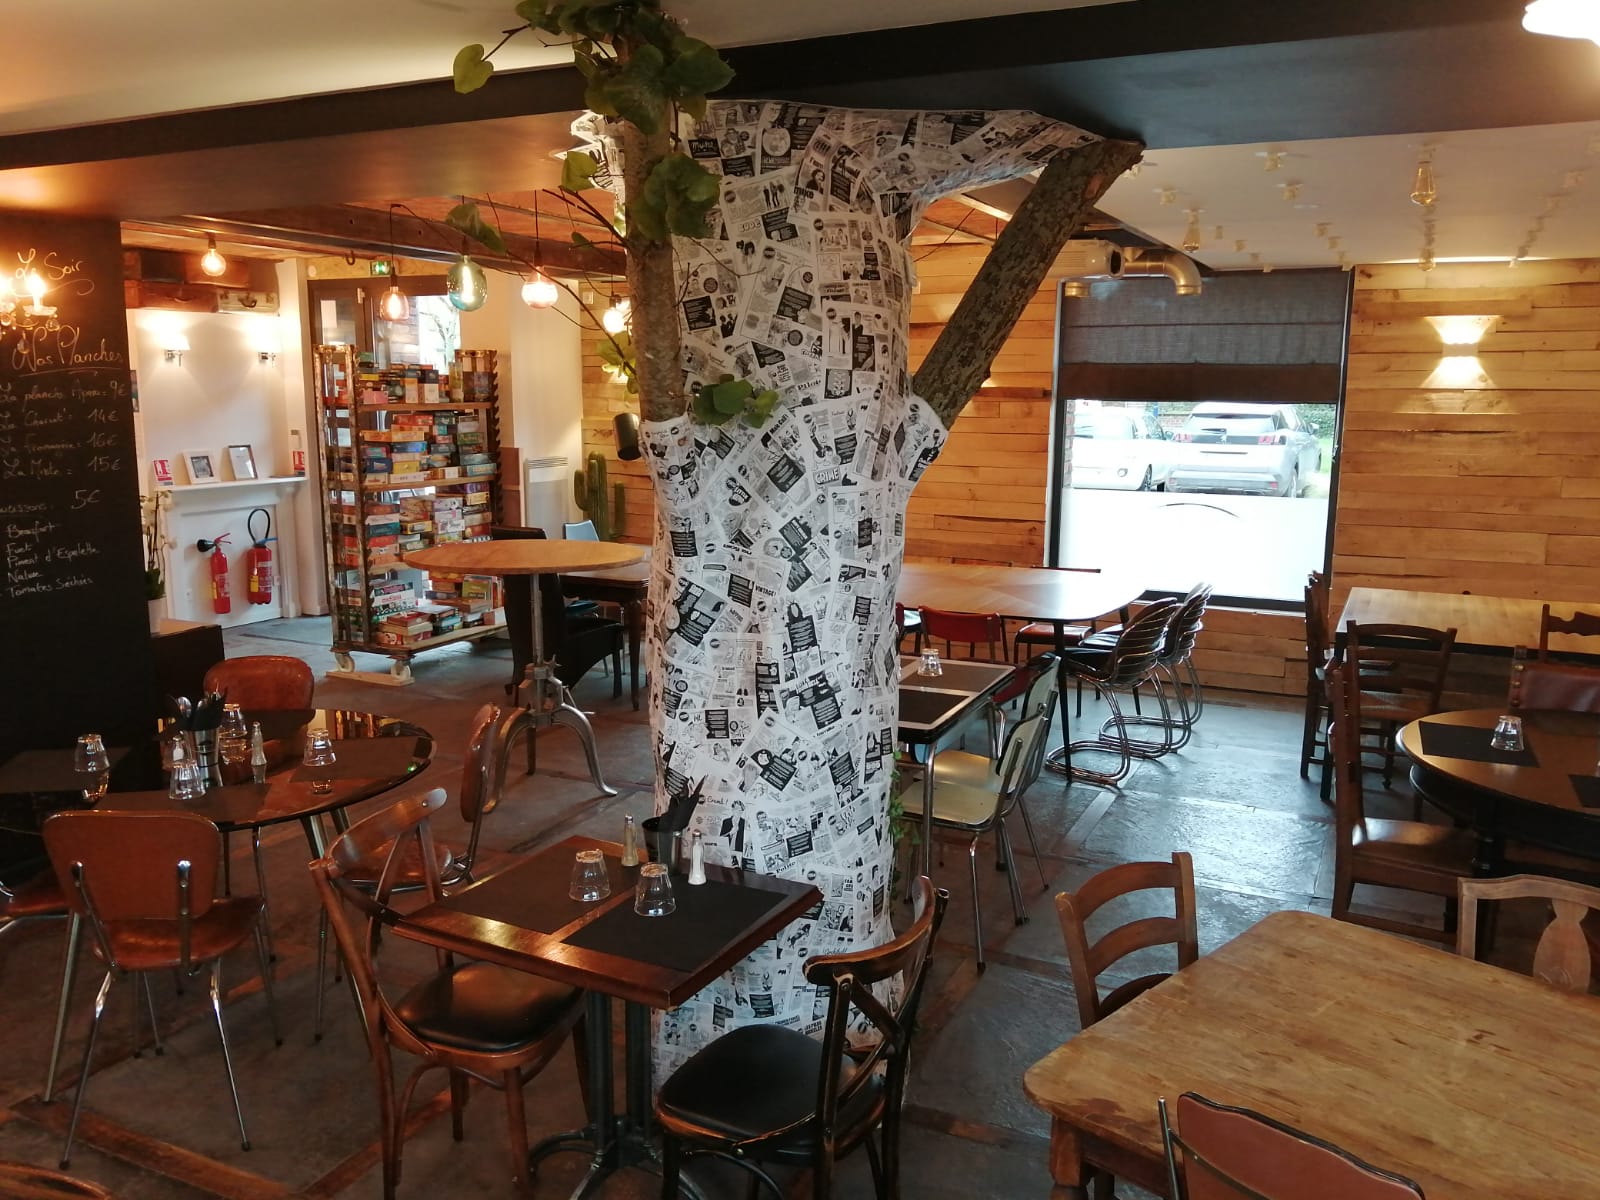 Bar Restaurant Bistrot Ludique, au coeur du village d'Herlies dans les Weppes.
Idéalement situé l'établissement se trouve à quinze minutes de la ville de Lille, capitale des Flandres.
Le Tablier a été créé en 2020 pour offrir un lieu de vie au sein du village et des communes avoisinantes.
->Vente du fonds de commerce 120 000 €
-Aménagements intérieurs
-Tous les éléments de la cuisine et de bar (achetés neufs en 2020)

->Location des murs du local situé en rez-de-chaussée d’une surface d’environ 120 m² comprenant :
-Une salle de restaurant (78 places assises),
-Une cuisine,
-Une réserve,
-2 sanitaires dont 1 PMR,
-Une terrasse extérieur (du 1er avril au 1er octobre),
-Une licence IV

Loyer mensuel - 1 600 euros HT
Provision pour charge mensuelle - 250 euros (taxe foncière et eau)

Pour tous renseignements complémentaires merci de contacter